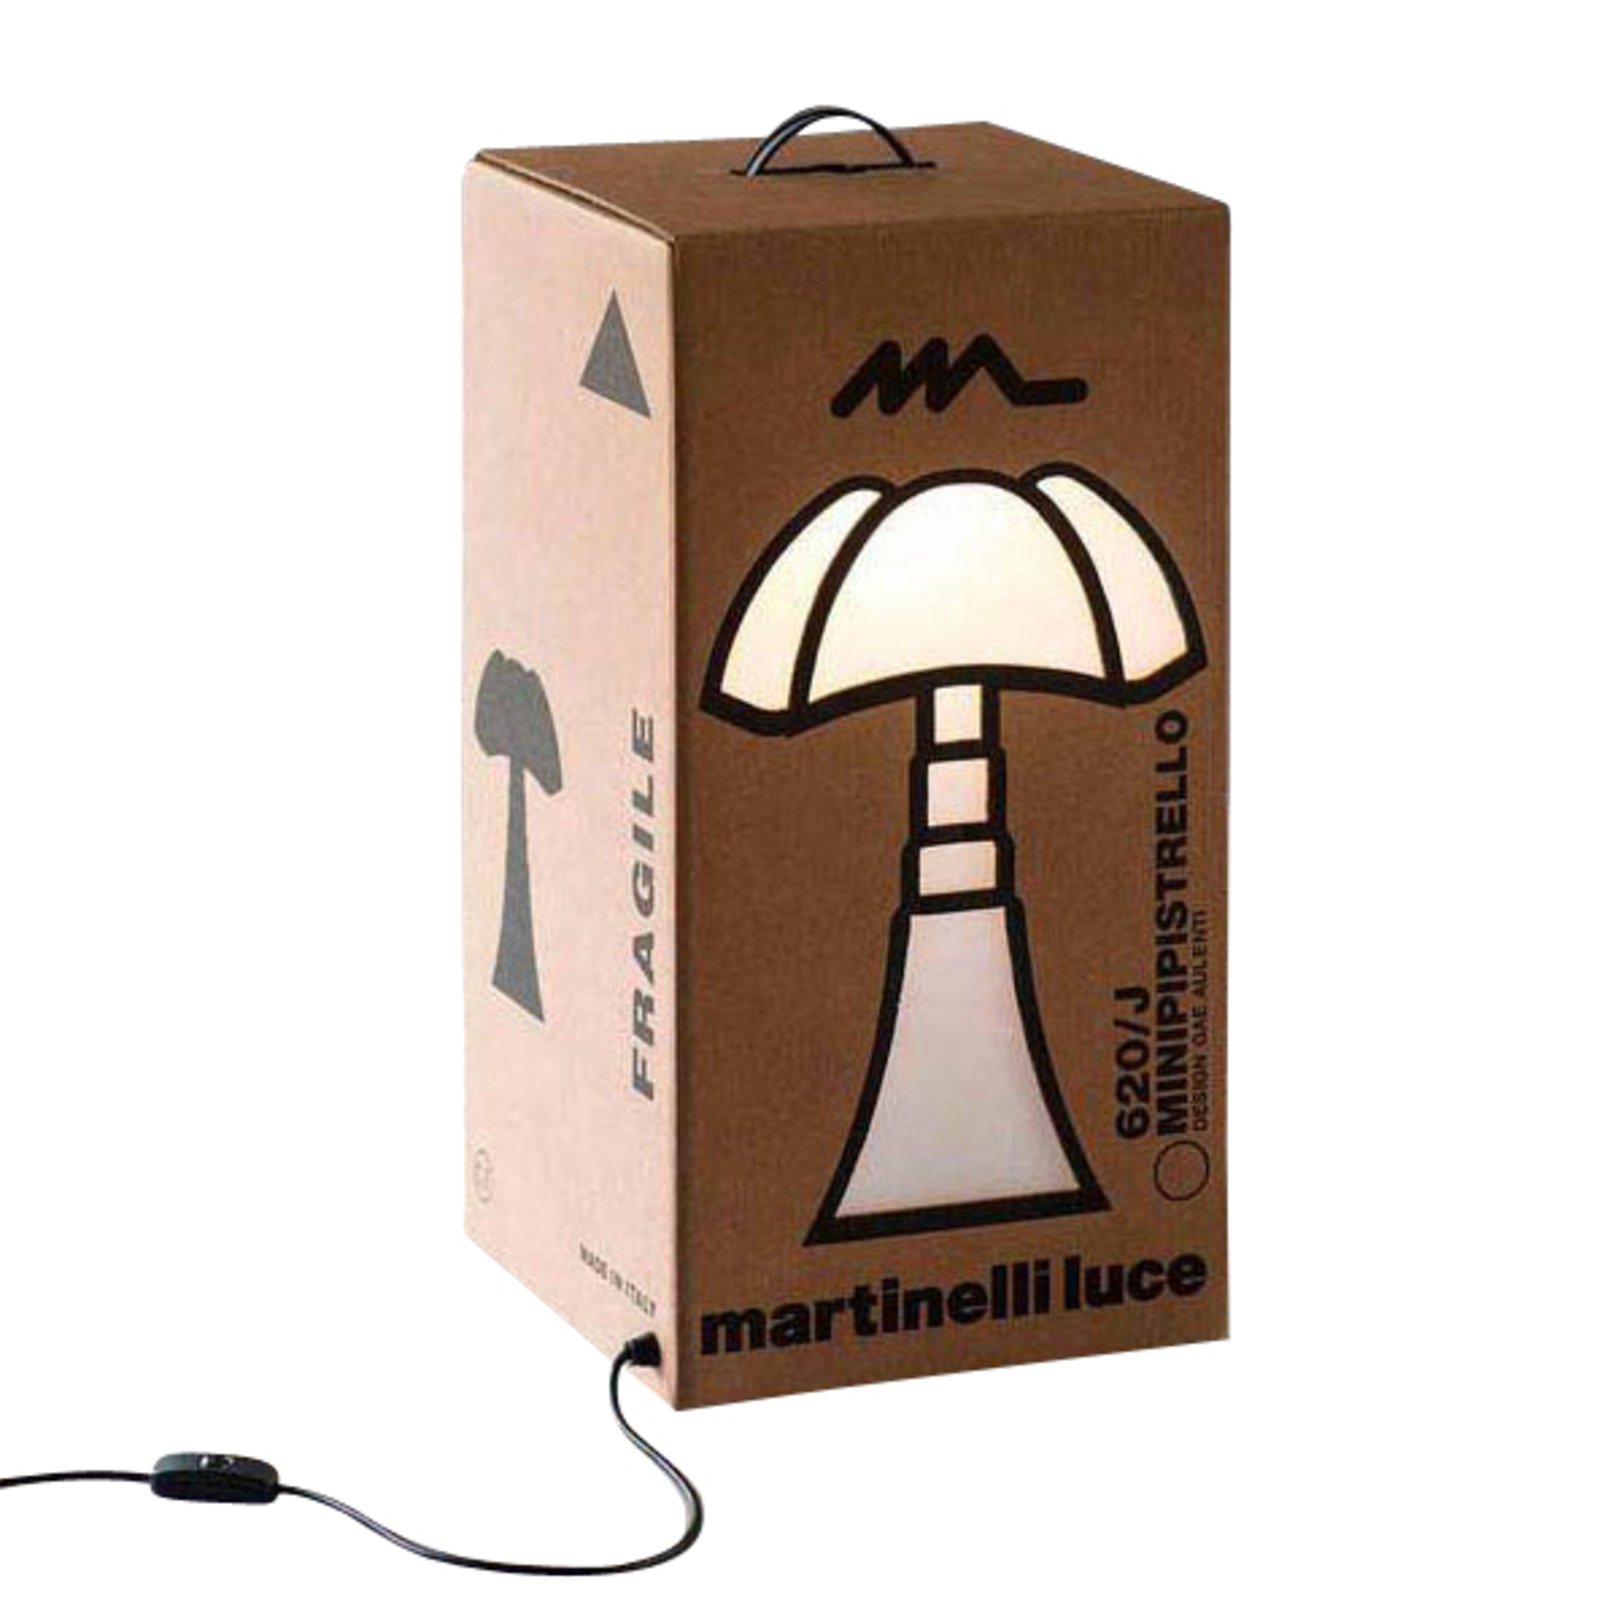 Martinelli Luce Minipipistrello Cartone lanterne